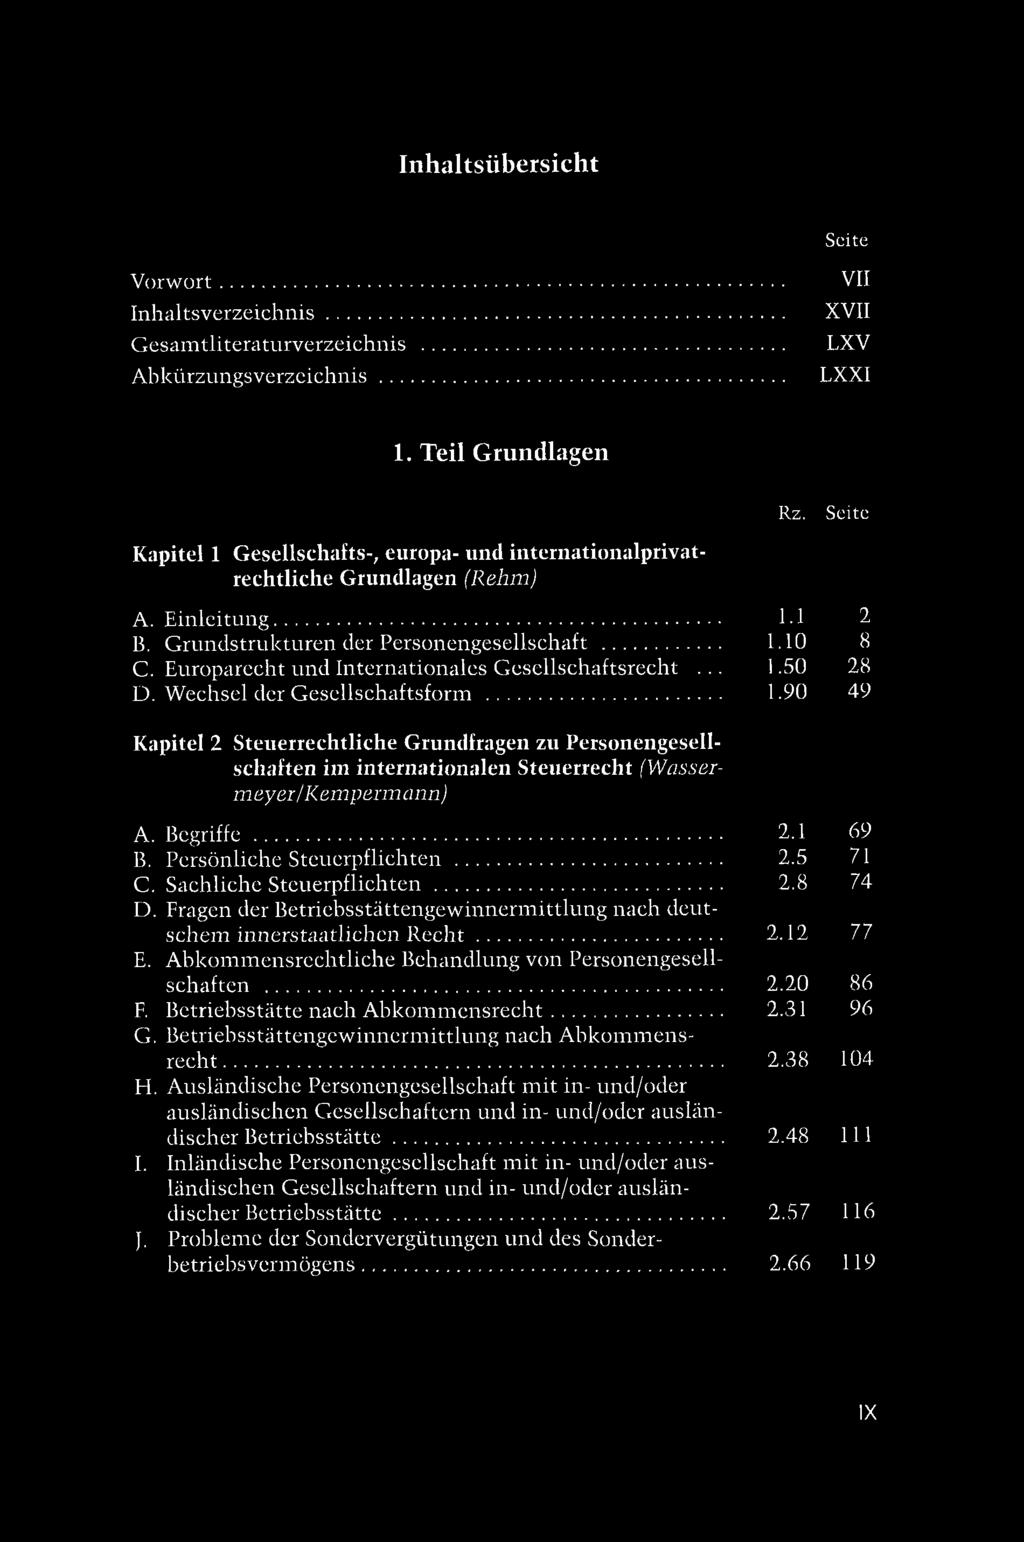 Europarecht und Internationales Gesellschaftsrecht... 1.50 28 D. Wechsel der Gesellschaftsform... 1.90 49 Kapitel 2 Steuerrechtliche Grundfragen zu Personengesellschaften im internationalen Steuerrecht (Wassermeyer/Kempermann) A.